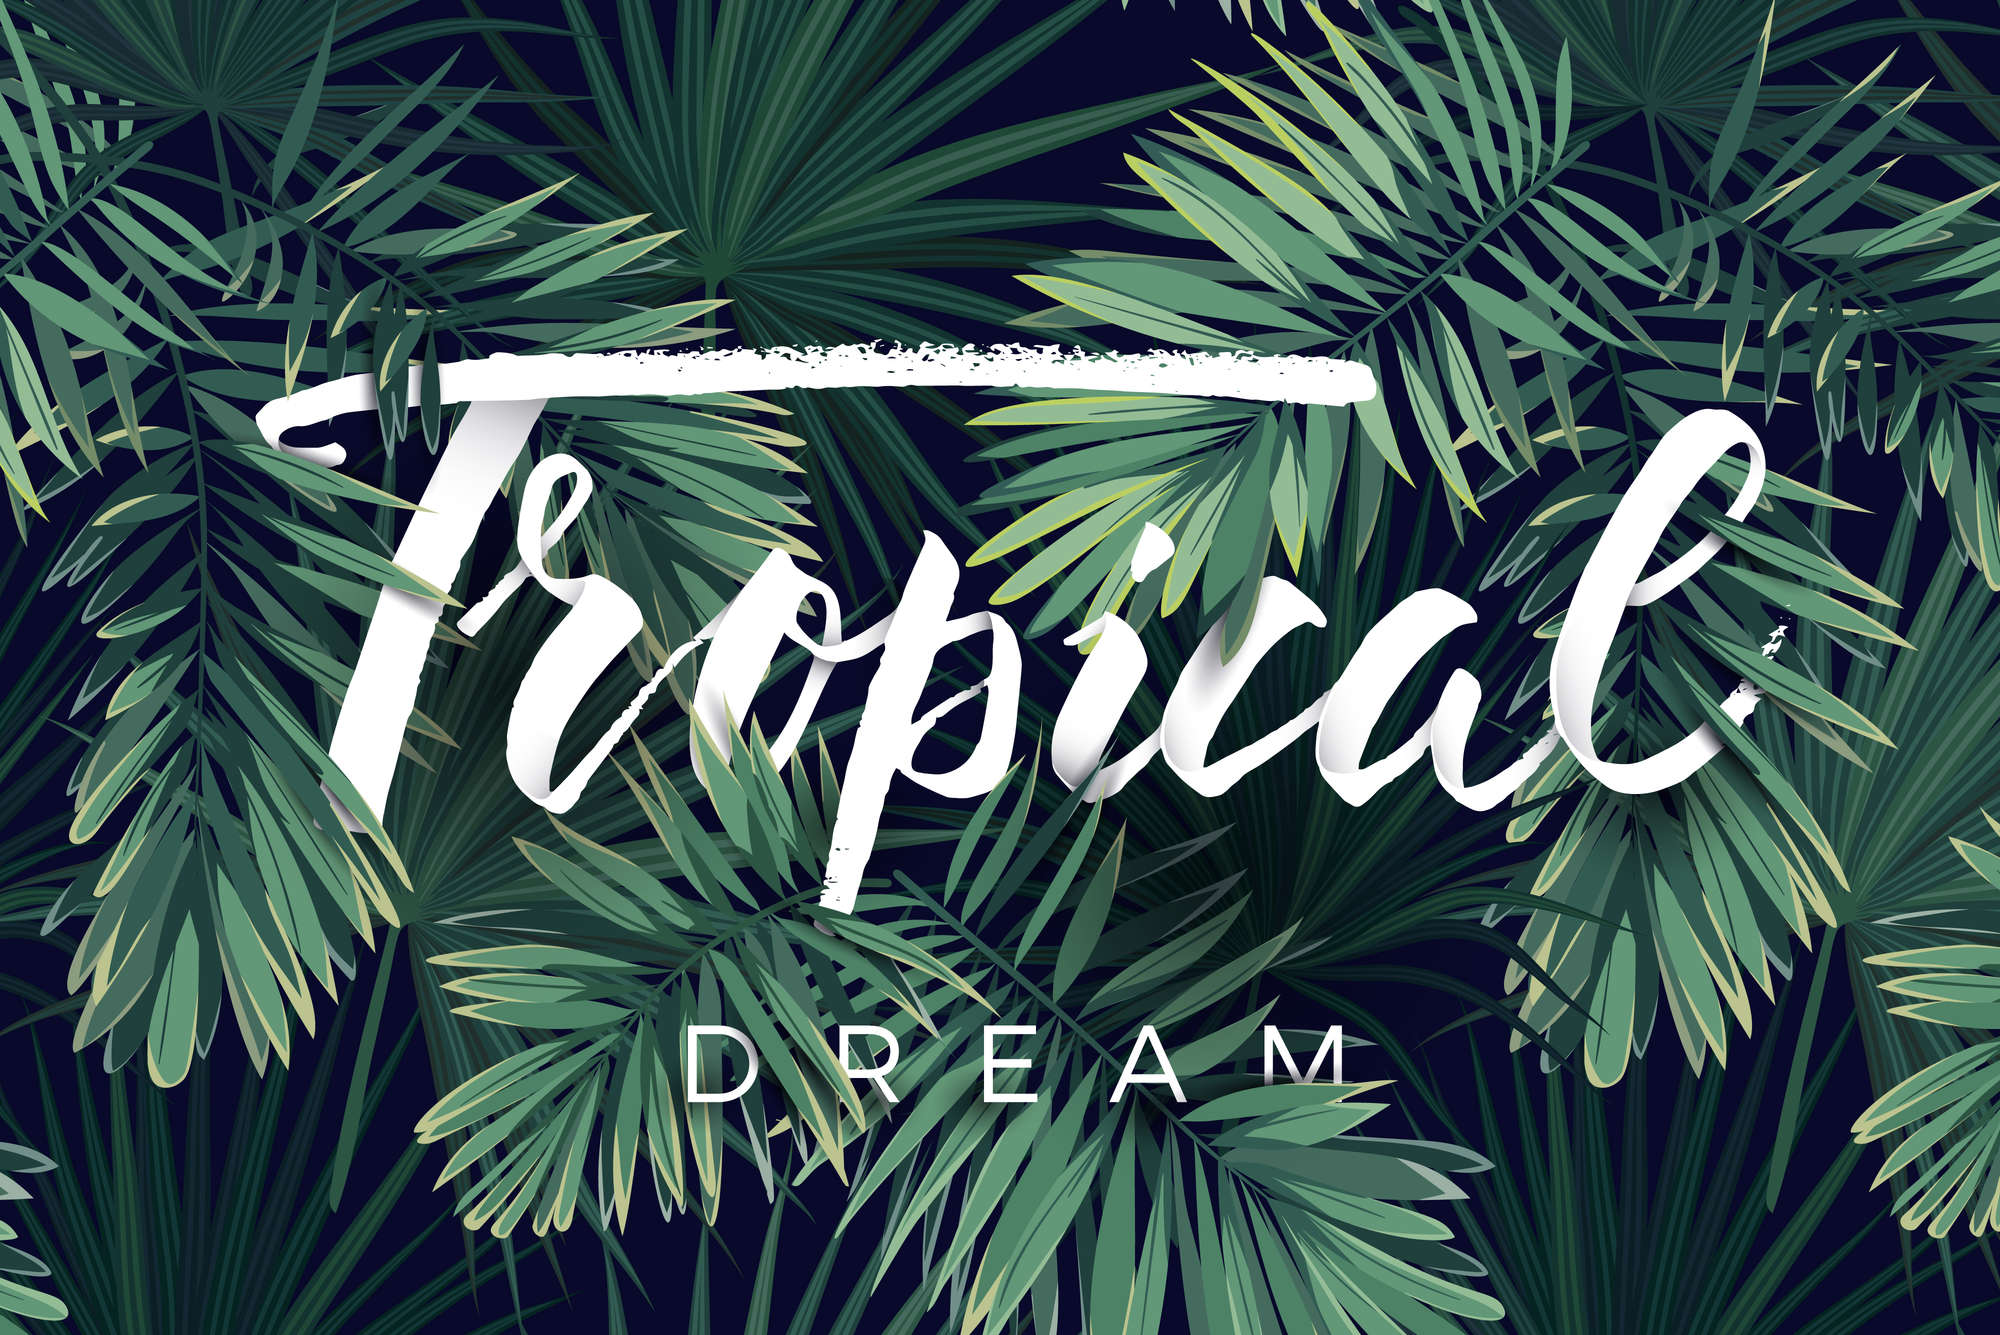             Grafik Fototapete "Tropical Dream" Schriftzug auf Matt Glattvlies
        